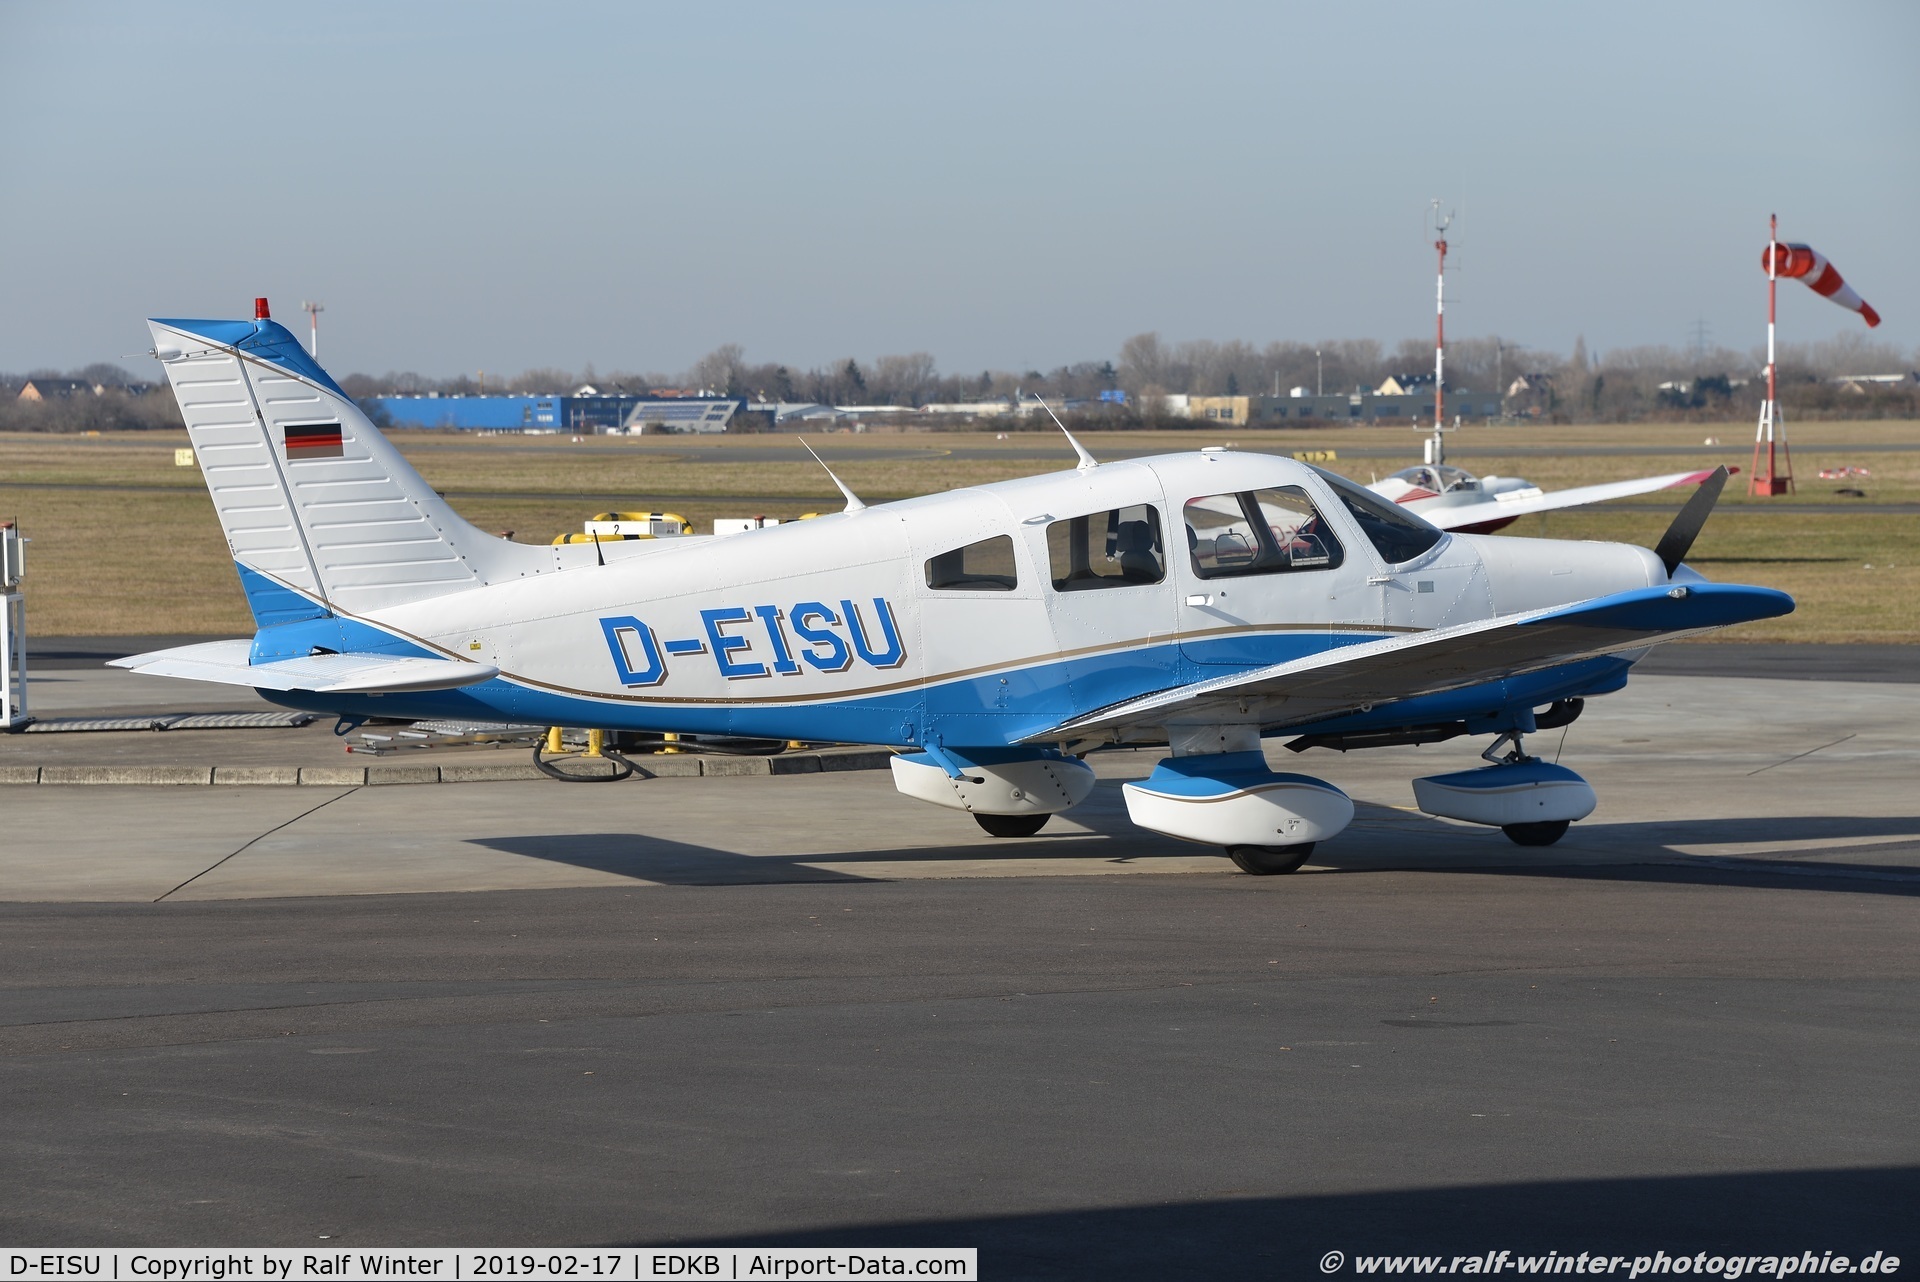 D-EISU, Piper PA-28-161 Warrior II C/N 28-7916540, Piper PA-28-161 Warrior II - Private - 28-7916540 - D-EISU - 17.02.2019 - EDKB